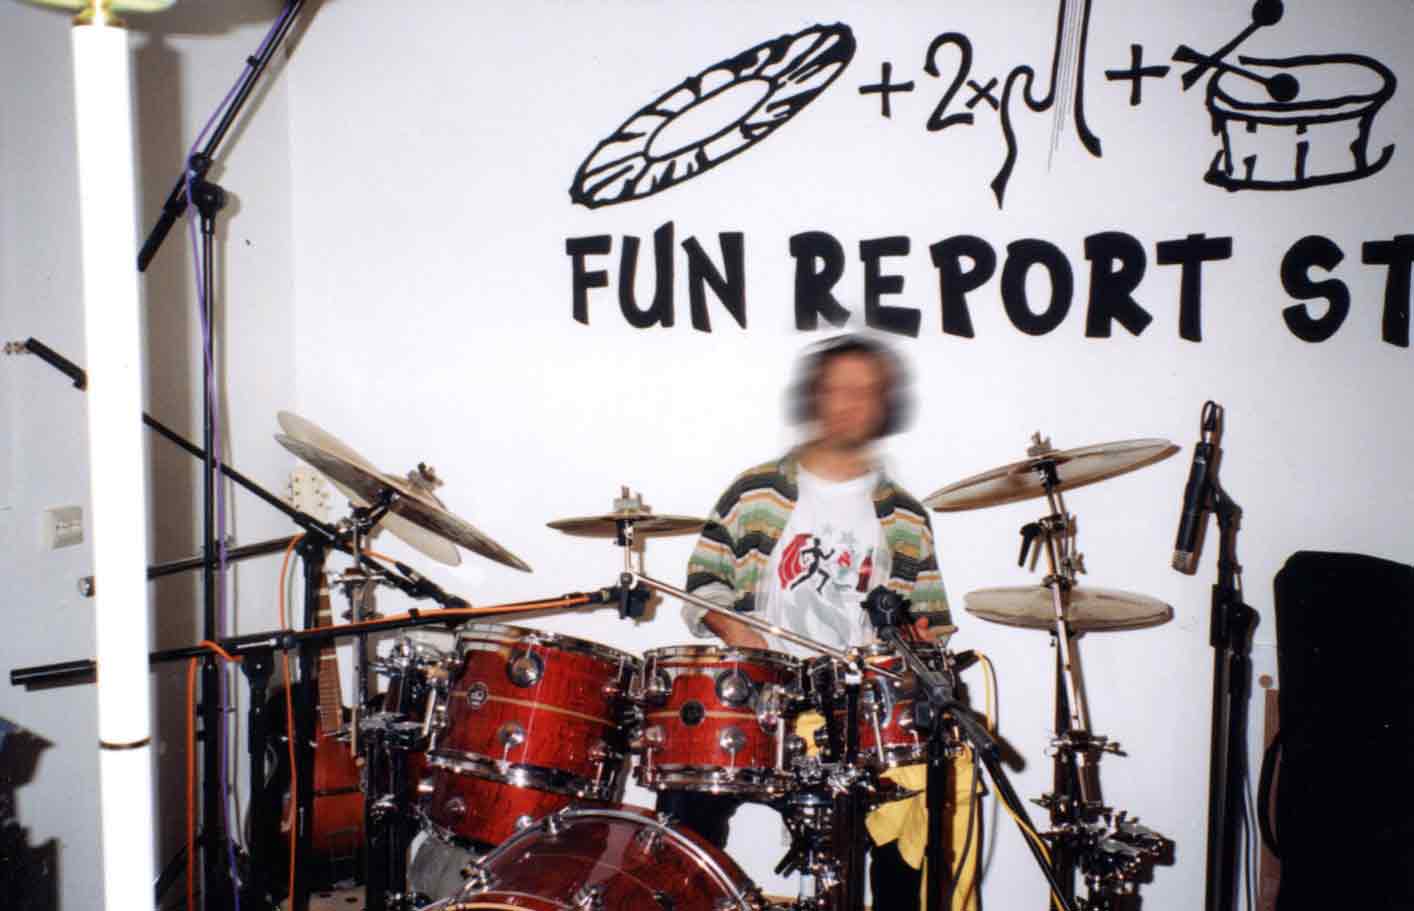 Fun Report Studio, Laufen 1997